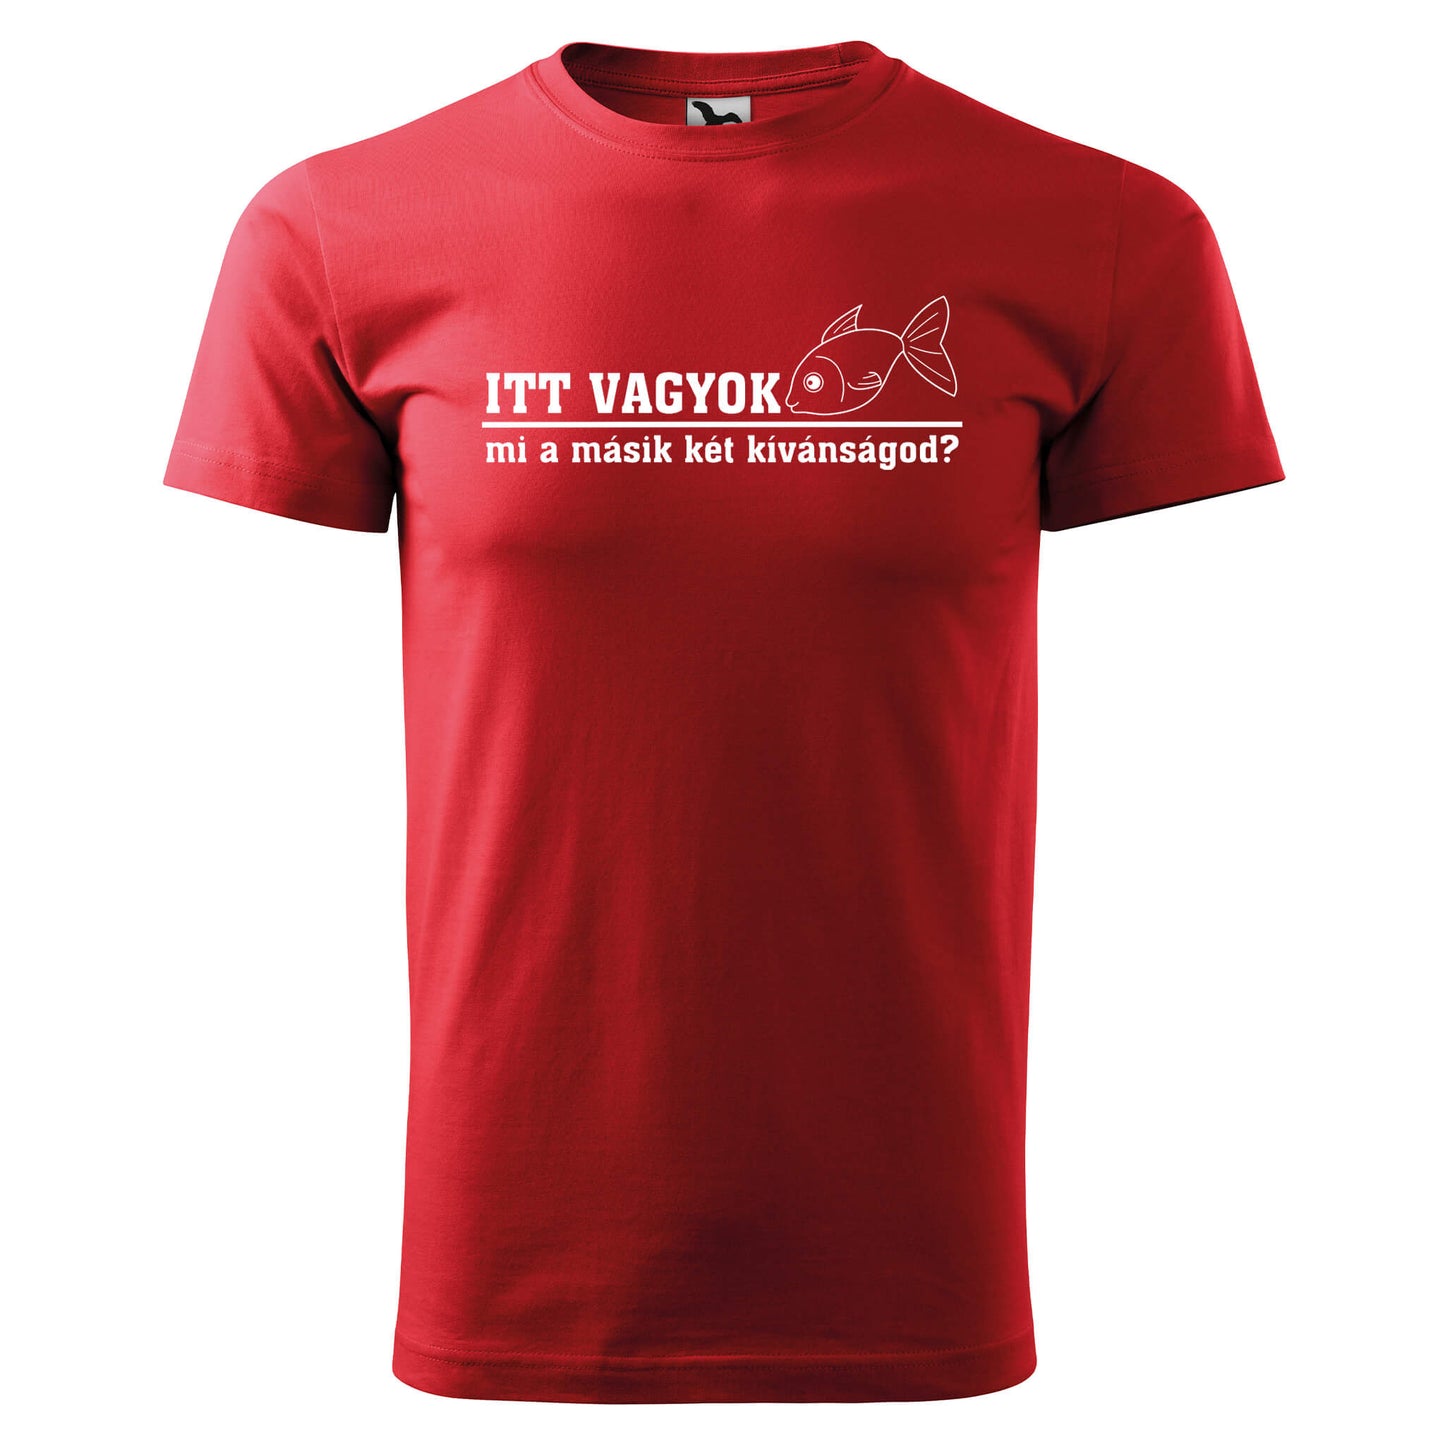 T-shirt - Itt vagyok, mi a másik két kívánságod? - rvdesignprint